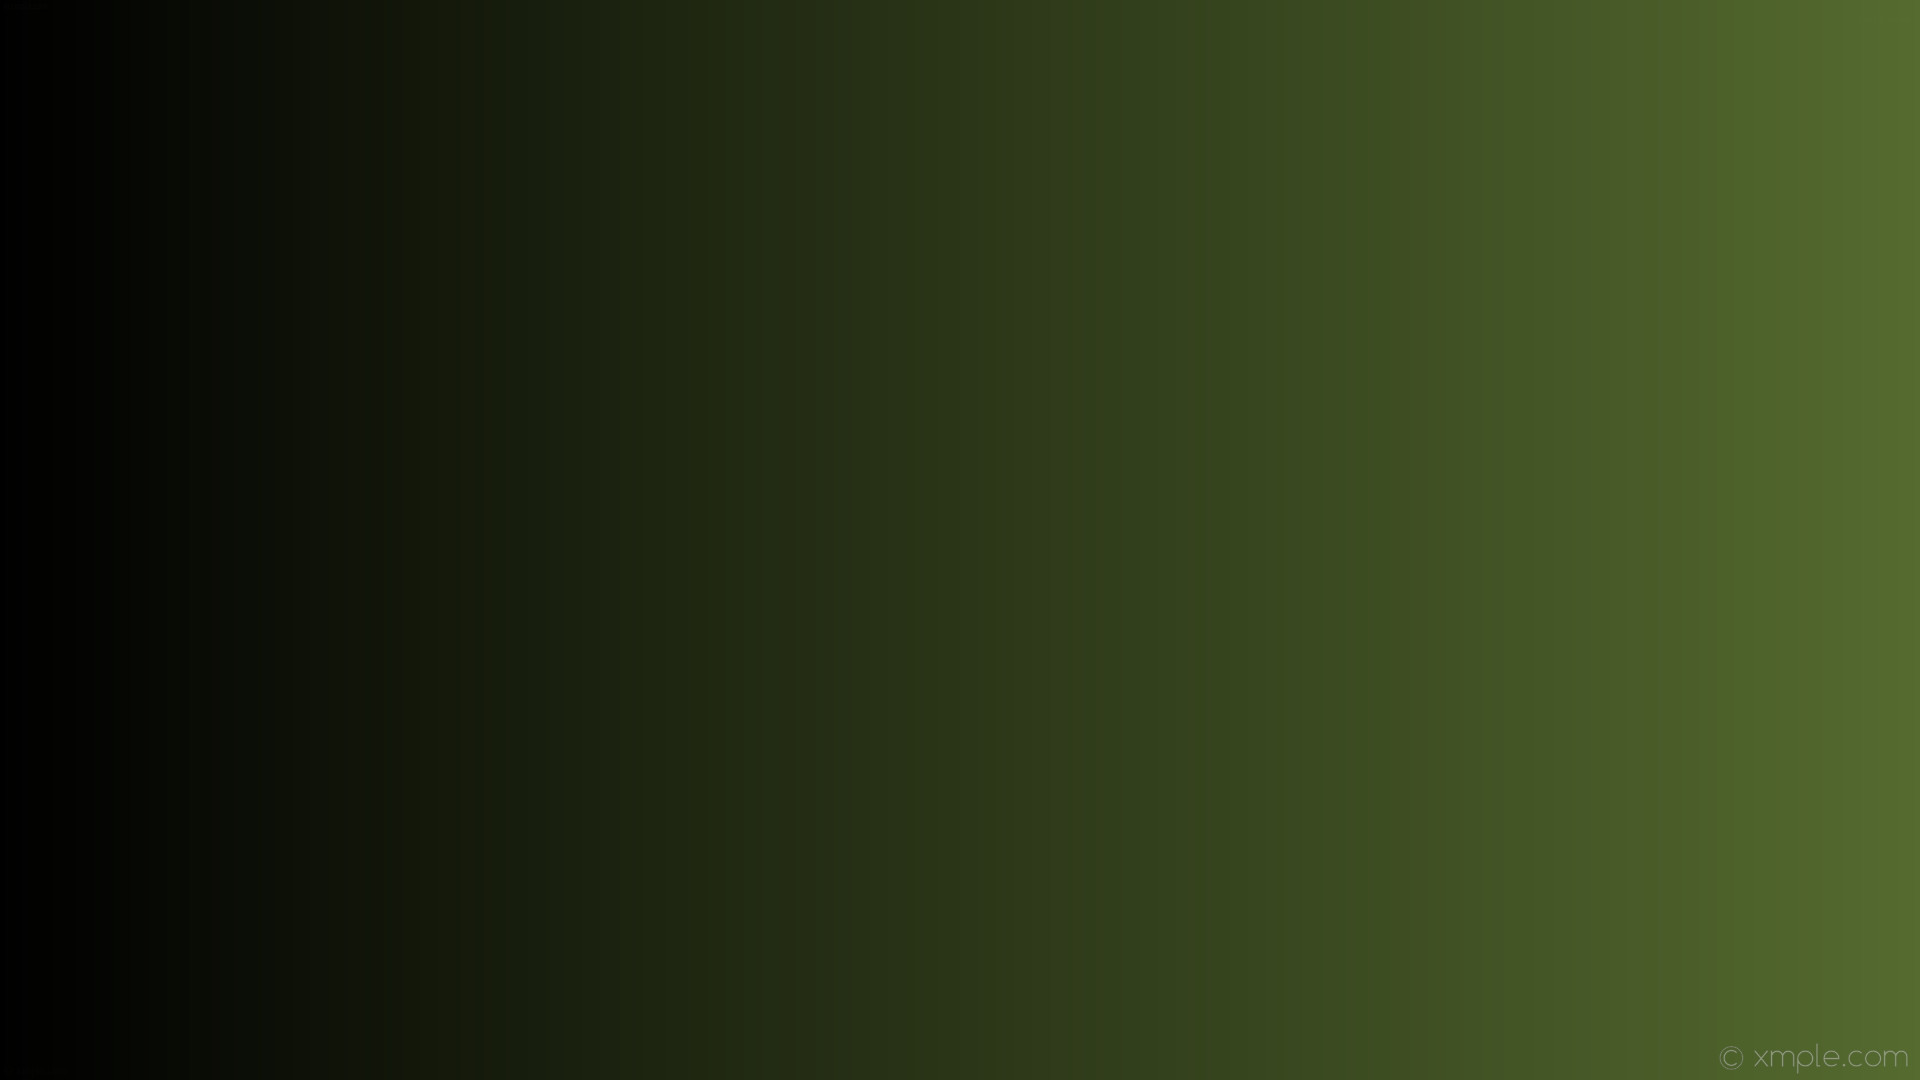 1920x1080 wallpaper gradient black green linear dark olive green #000000 #556b2f 180Â°